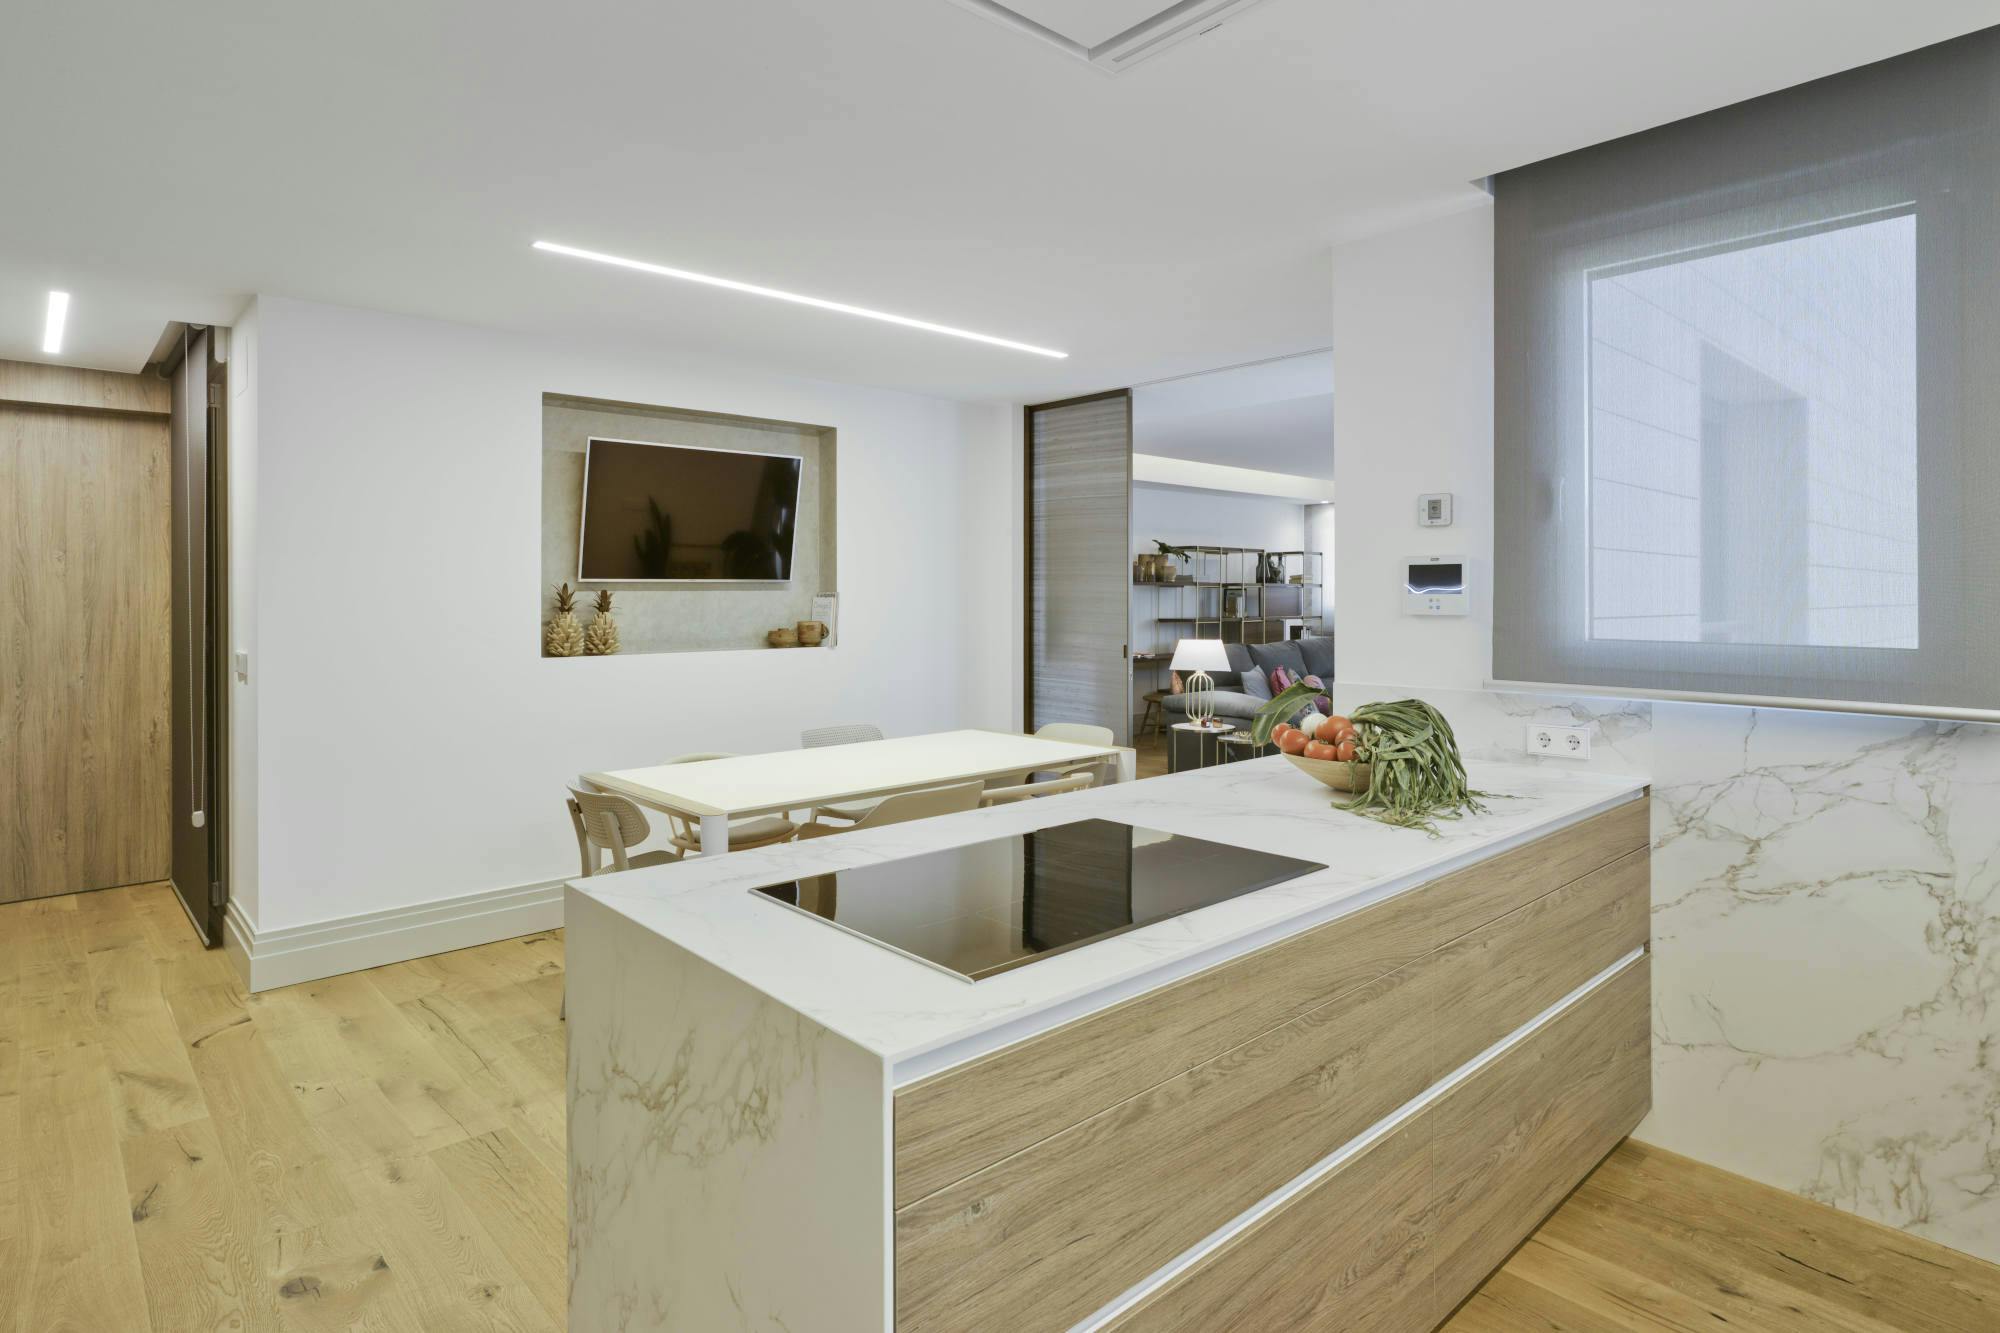 Bildnummer 41 des aktuellen Abschnitts von A bright, long-lasting kitchen worktop as the perfect backdrop for pictures von Cosentino Deutschland